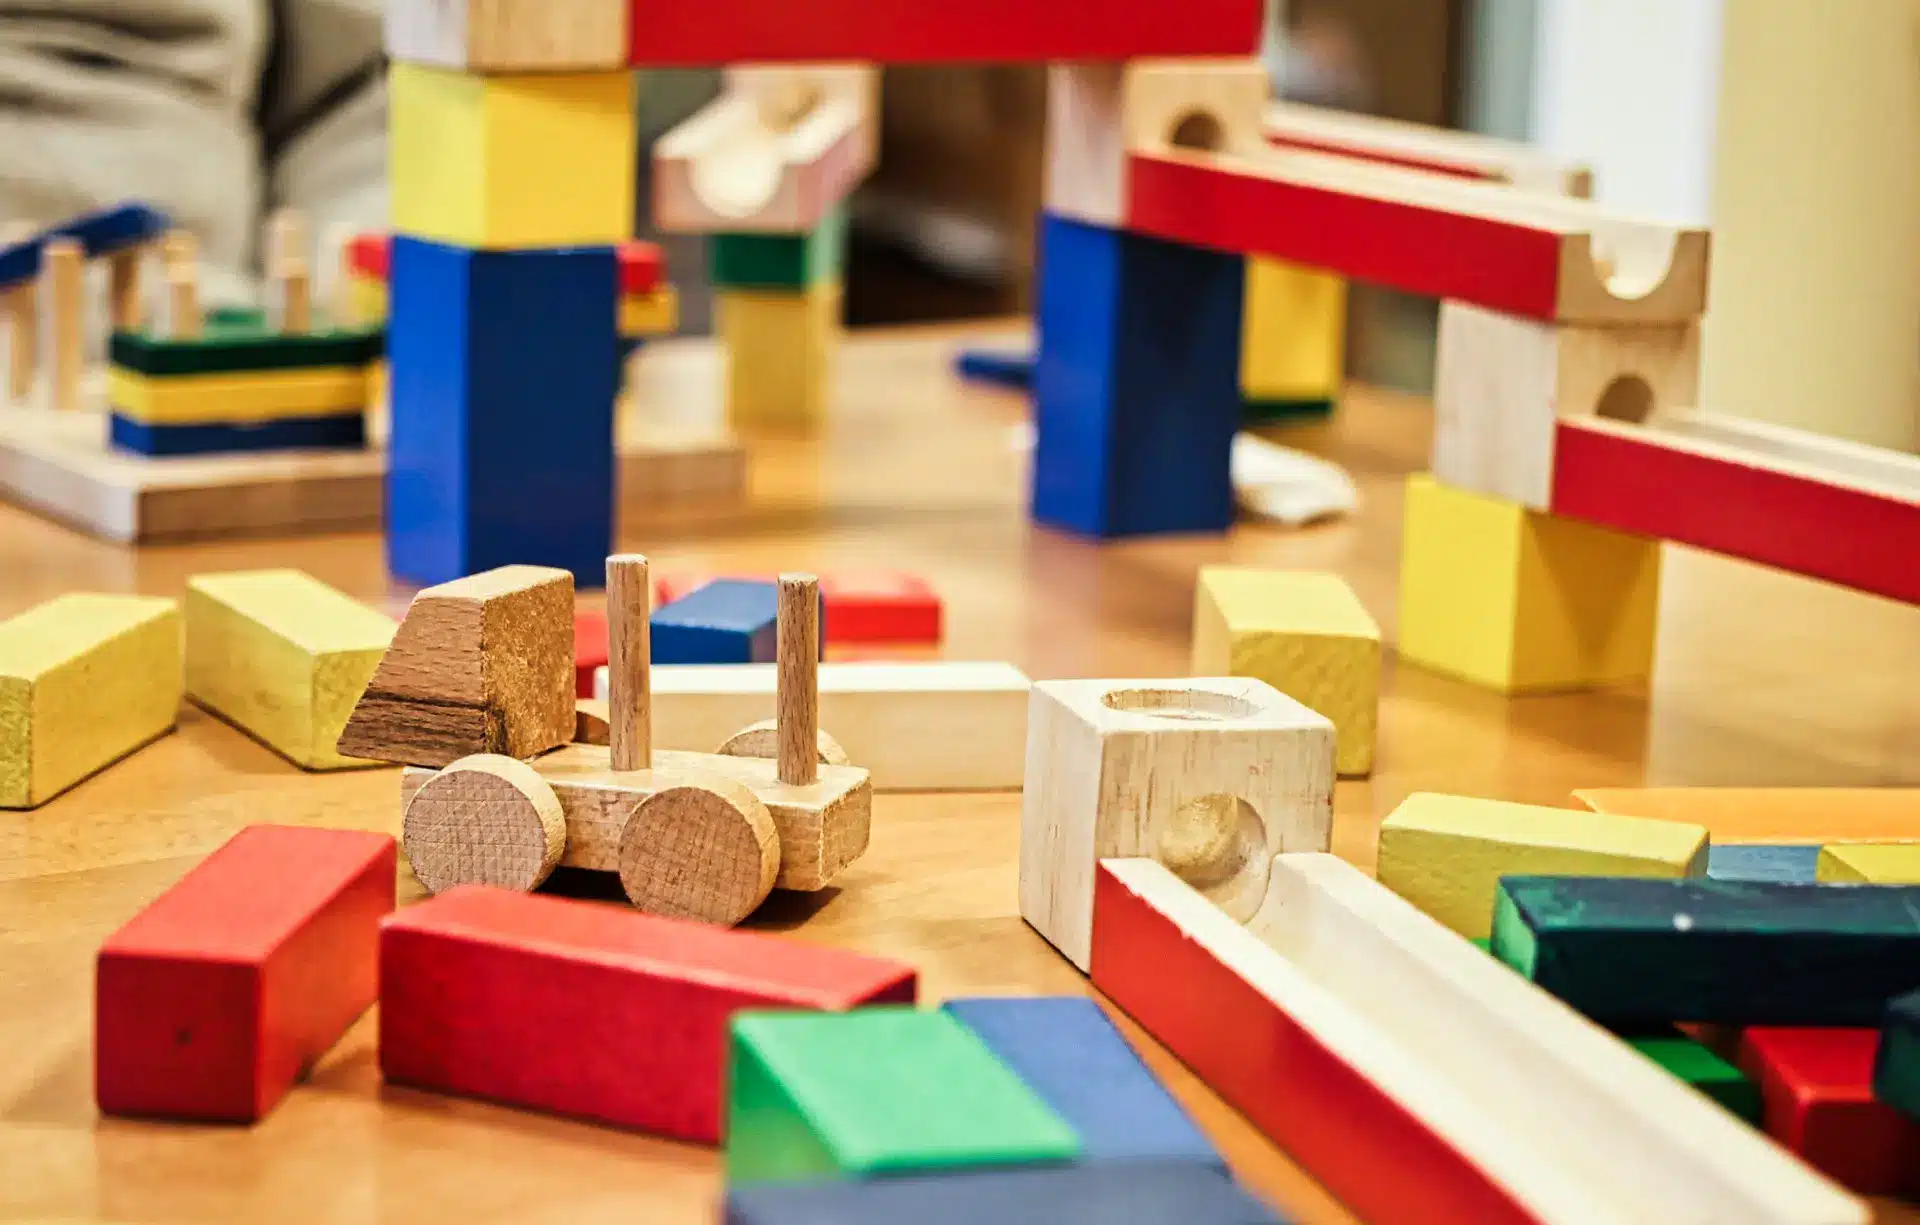 Un enfant participe à diverses activités d'inspiration Montessori, notamment jouer avec des blocs de bois.